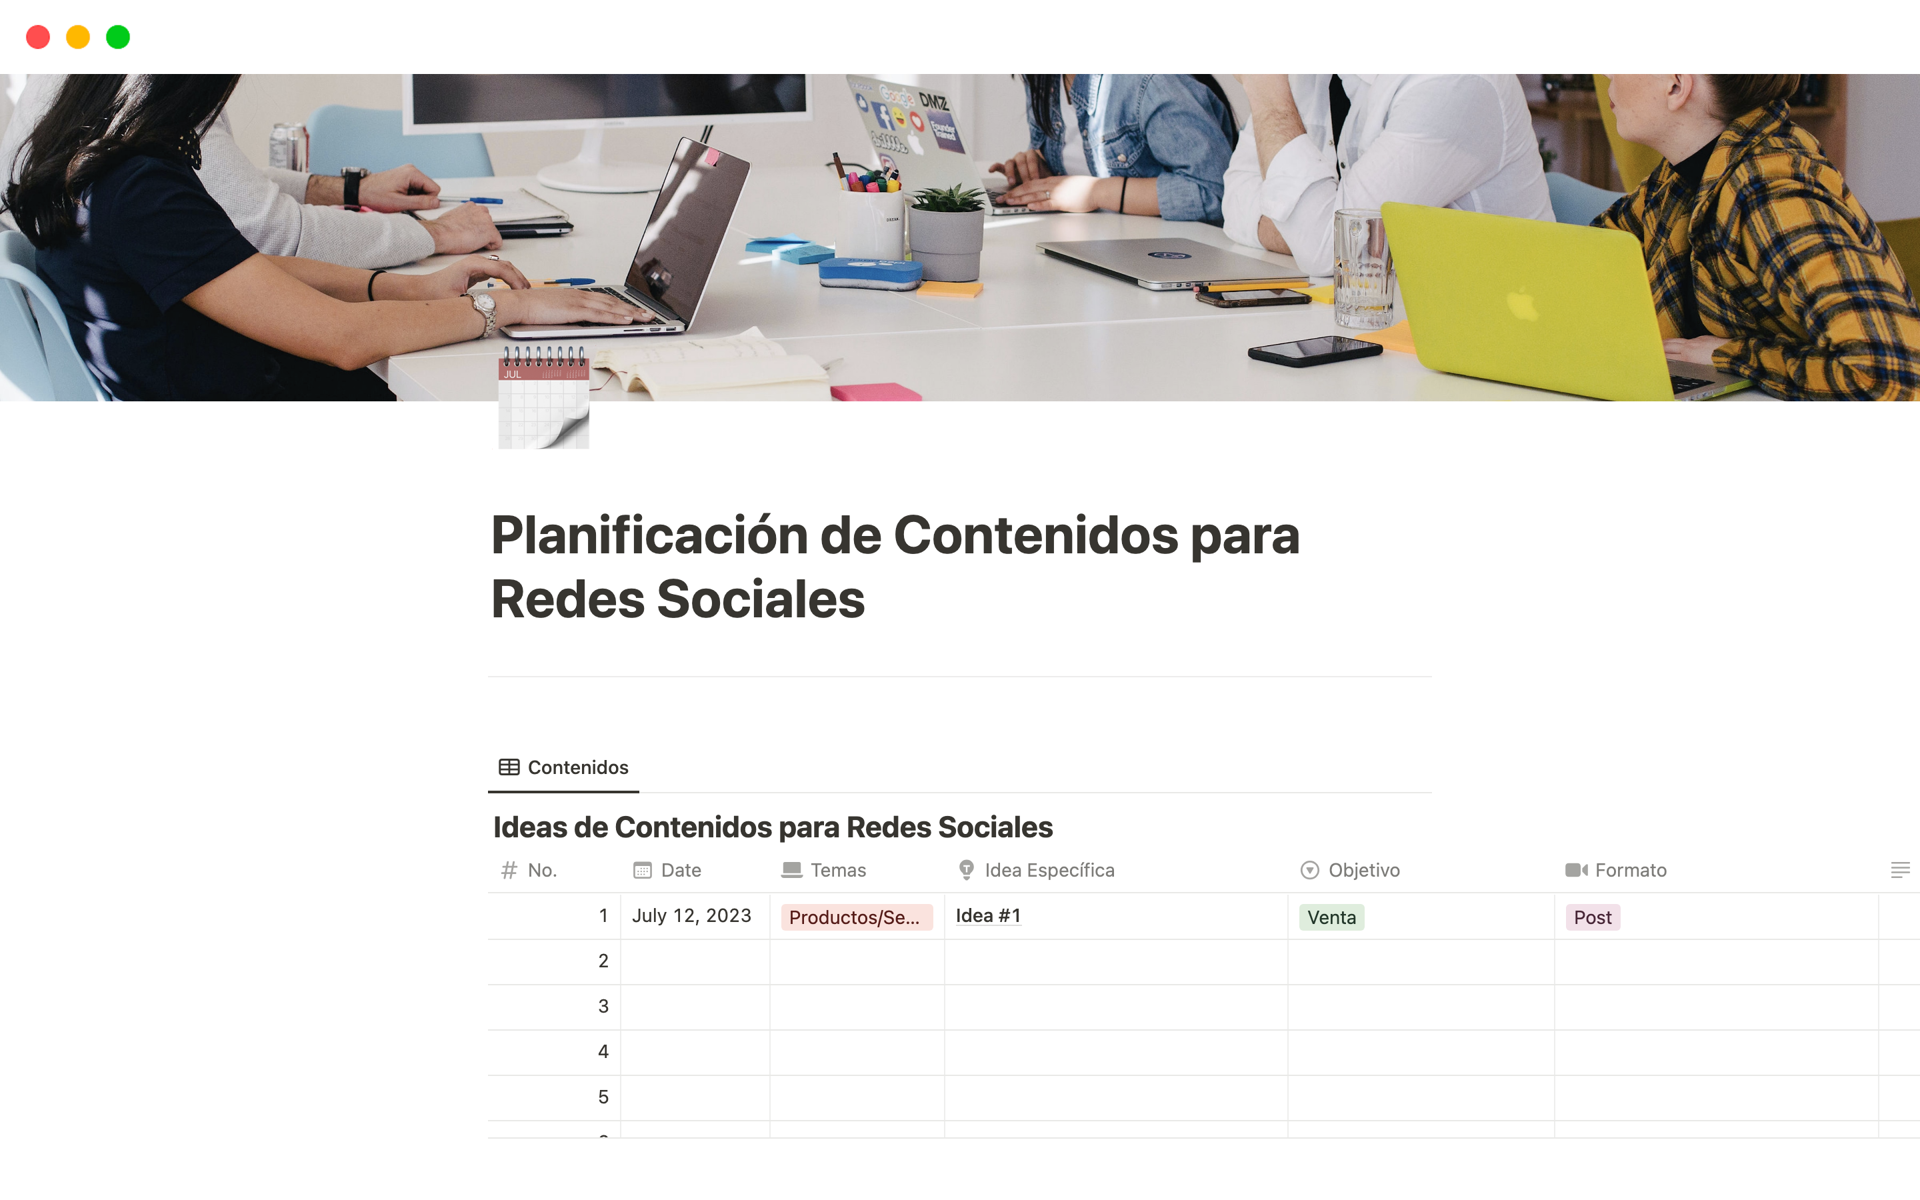 Eine Vorlagenvorschau für Planificación de Contenidos para Redes Sociales